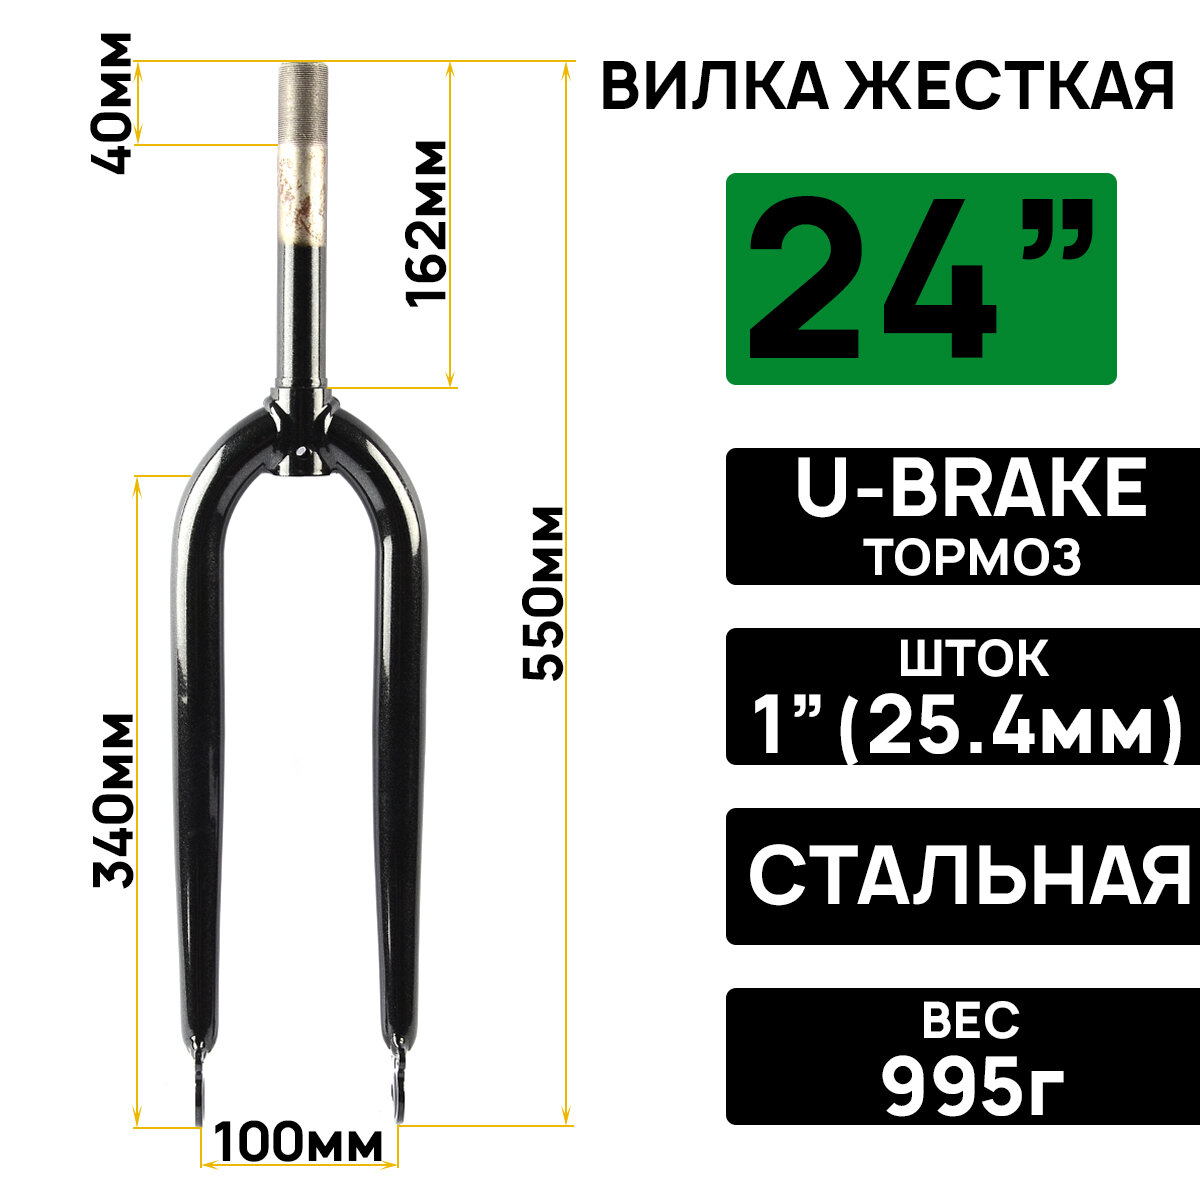 Вилка жесткая ARISTO 24", на 1" (25.4мм) резьбовая, длина штока 164мм, под ось втулки 3/8", совместимая с тормозами U-BRAKE, черная